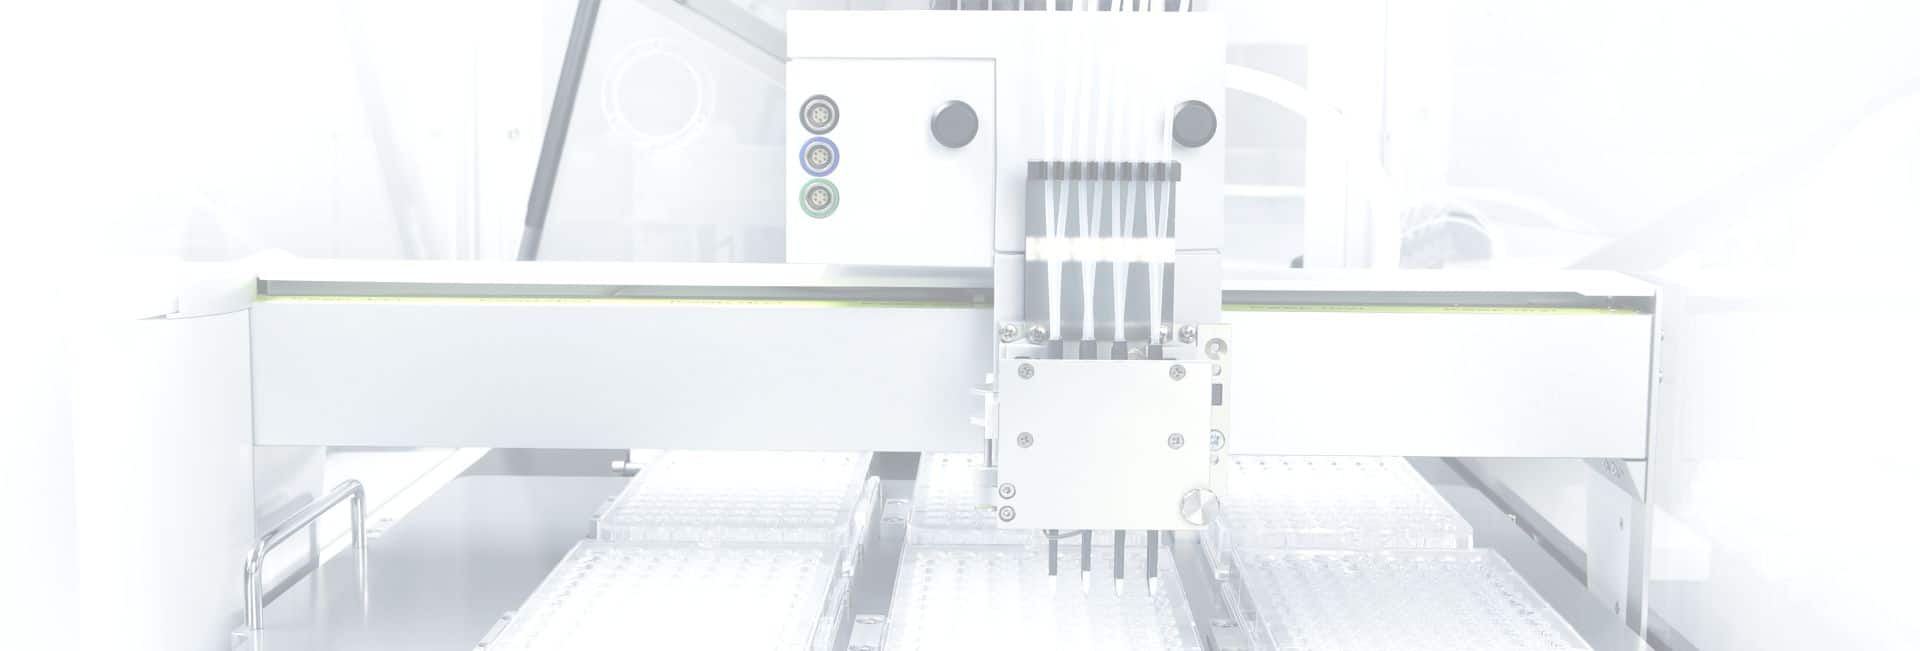 (c) Gesim-bioinstruments-microfluidics.com